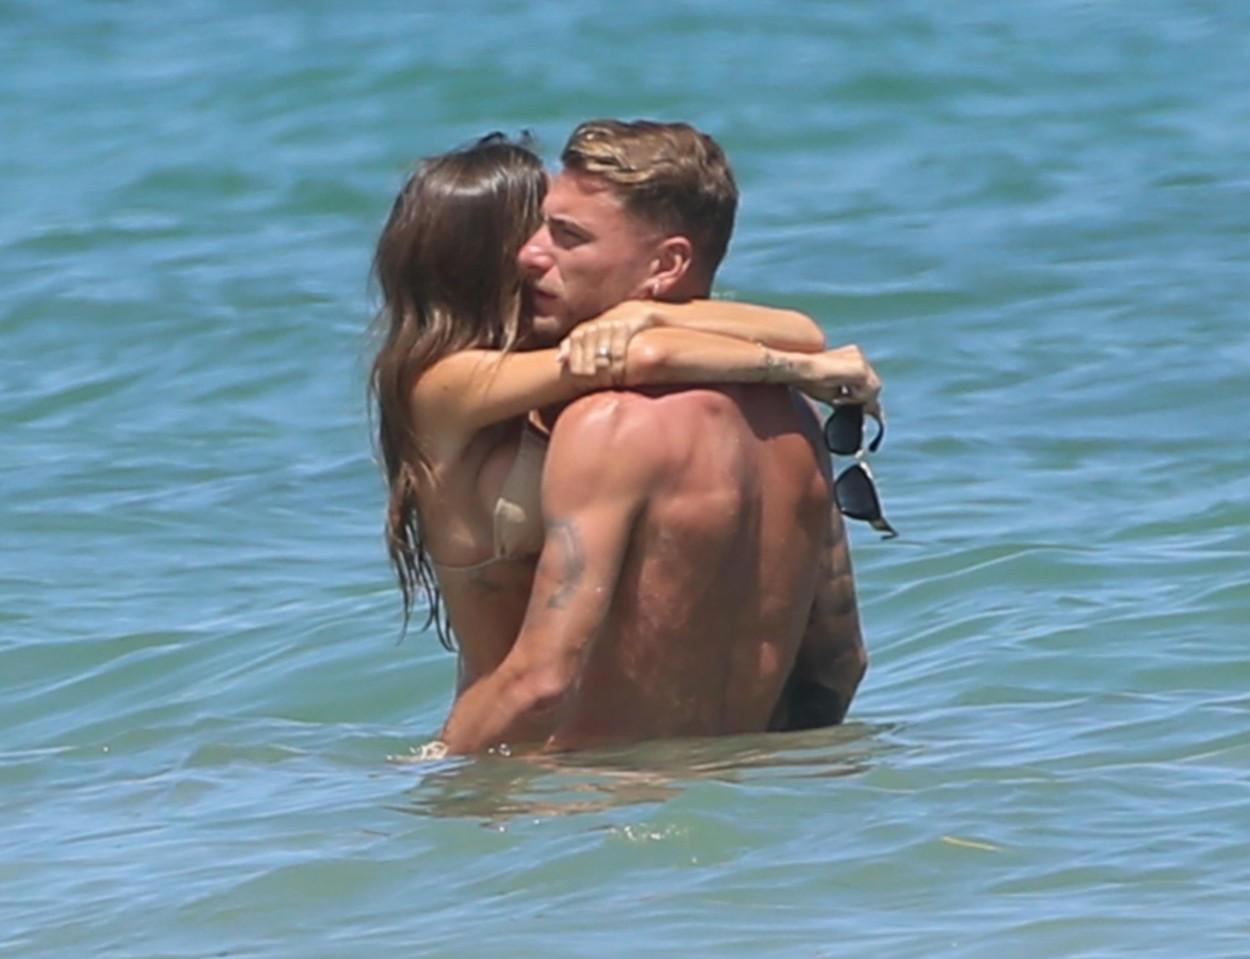 Ciro Immobile, împreună cu Jessica Melena, soția lui, în apă